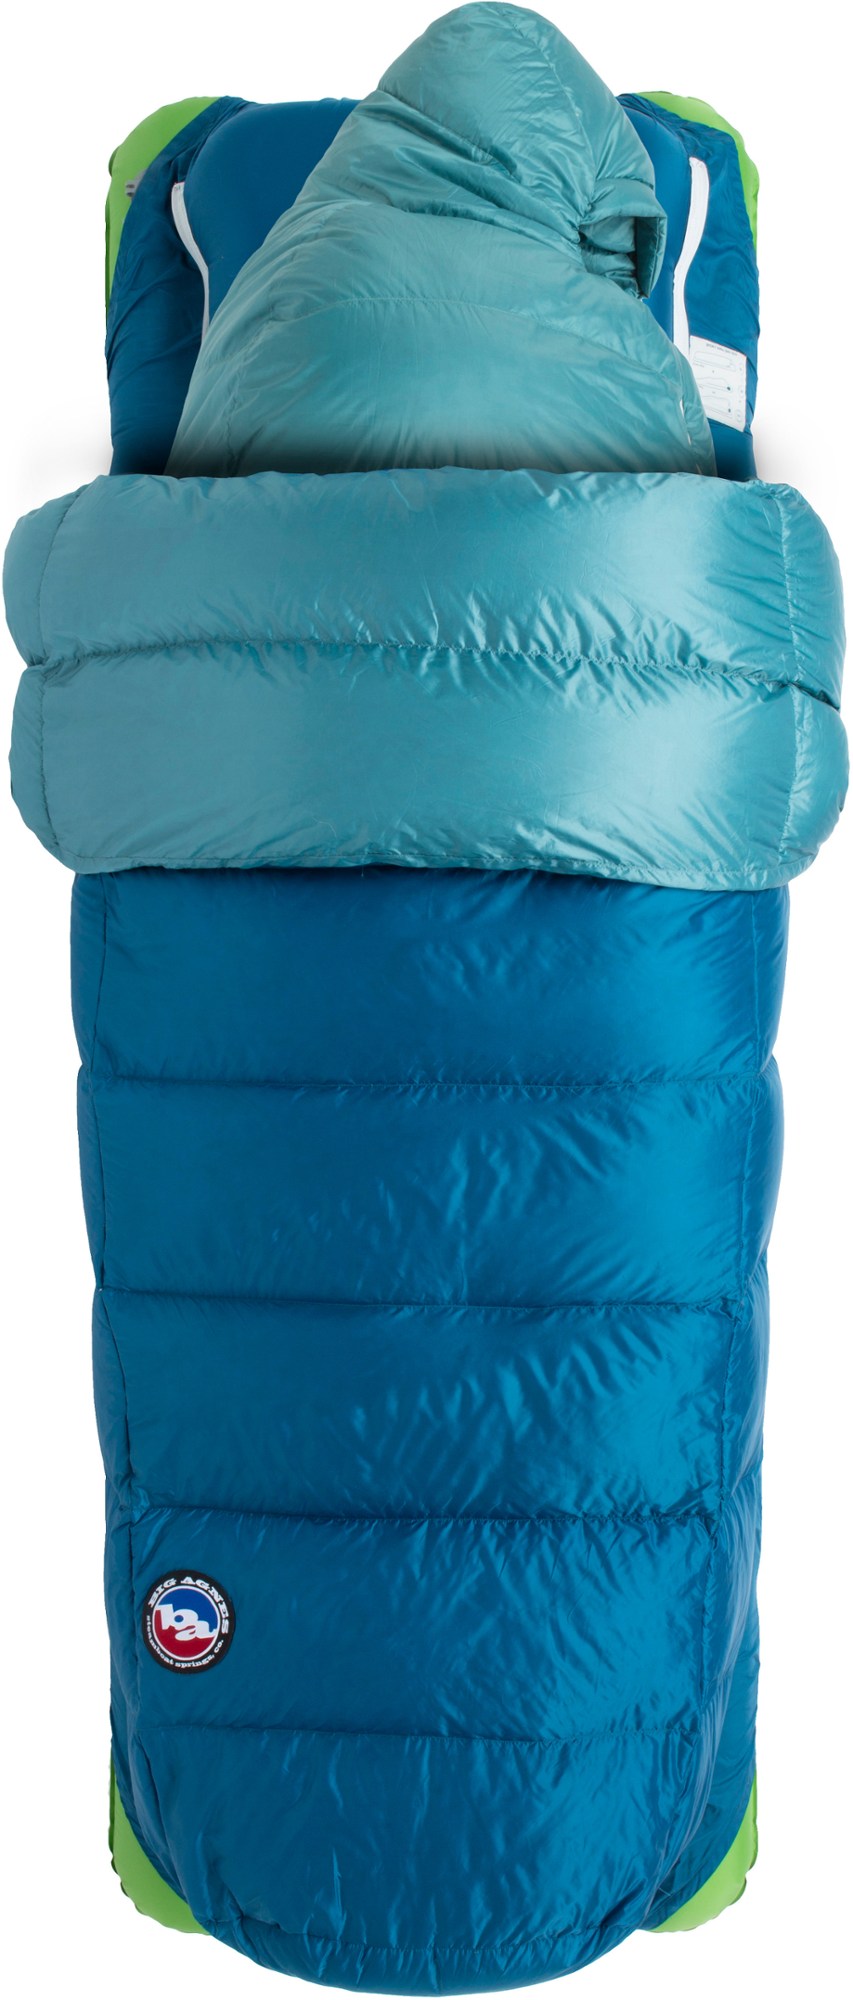 спальный мешок sidewinder sl 35 женский big agnes синий Спальный мешок Roxy Ann 3N1 15 - женский Big Agnes, синий